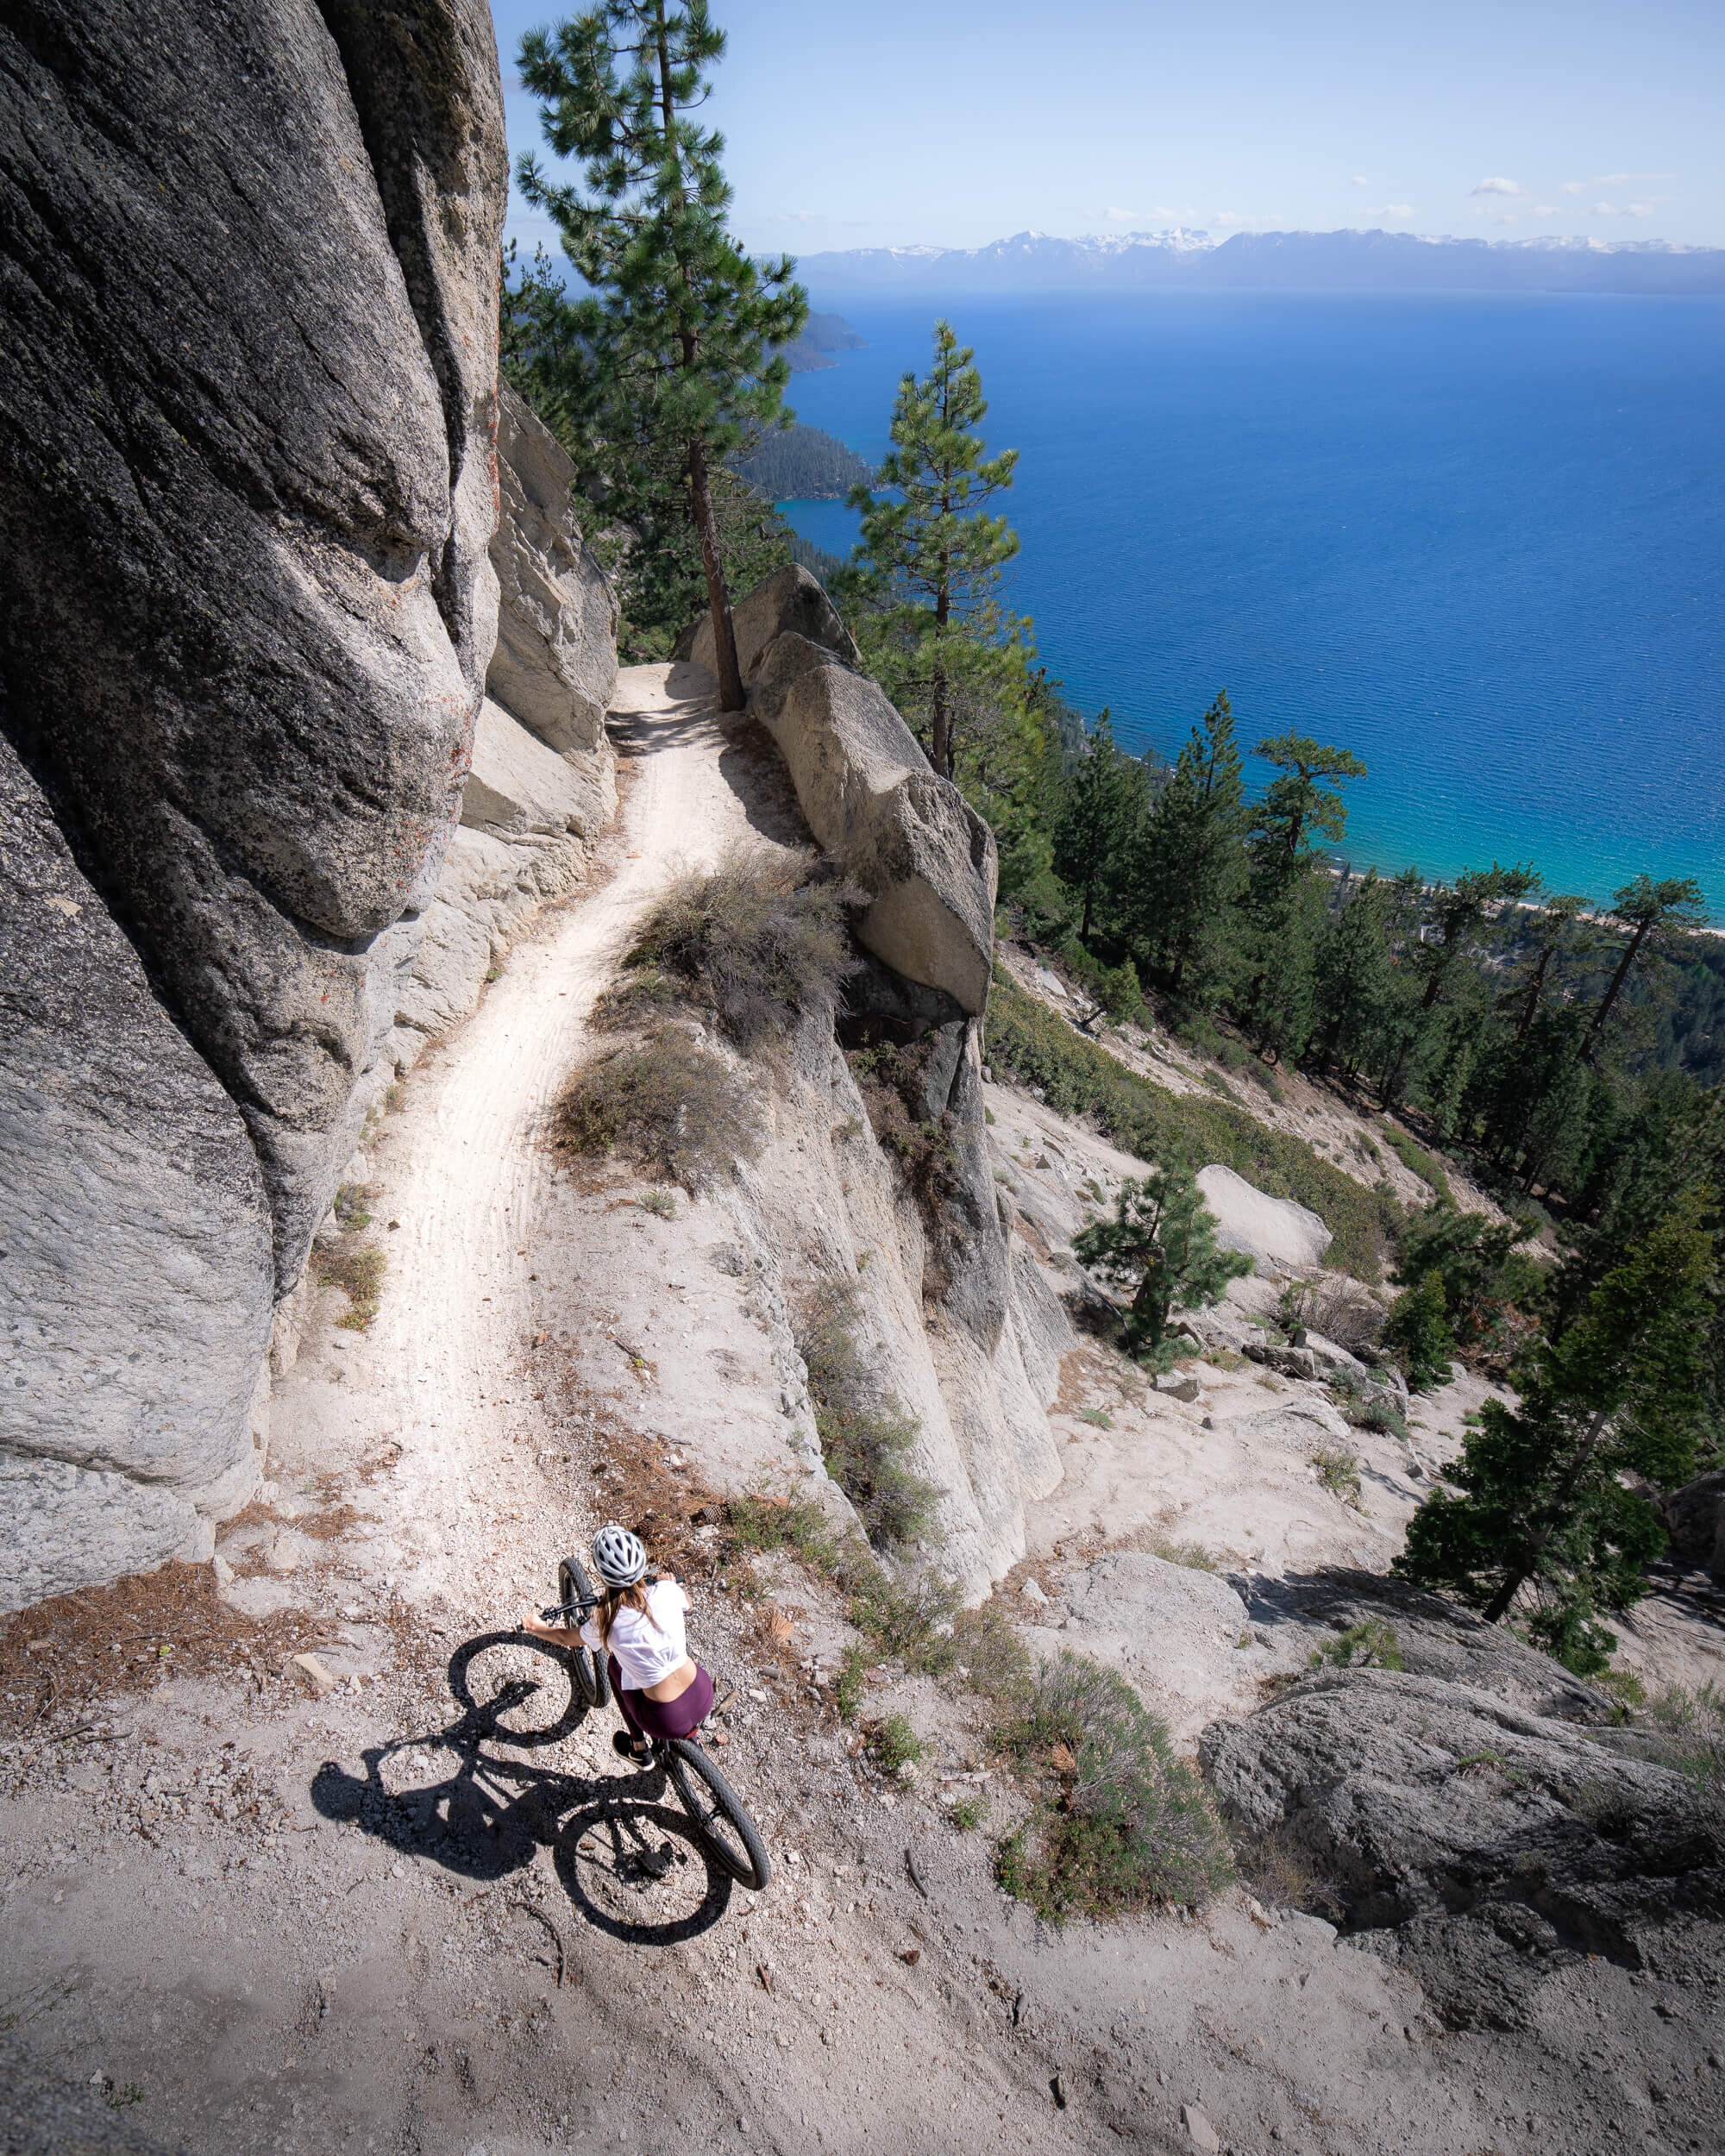 Flume Trail Mountain Biking, with views of Lake Tahoe below.